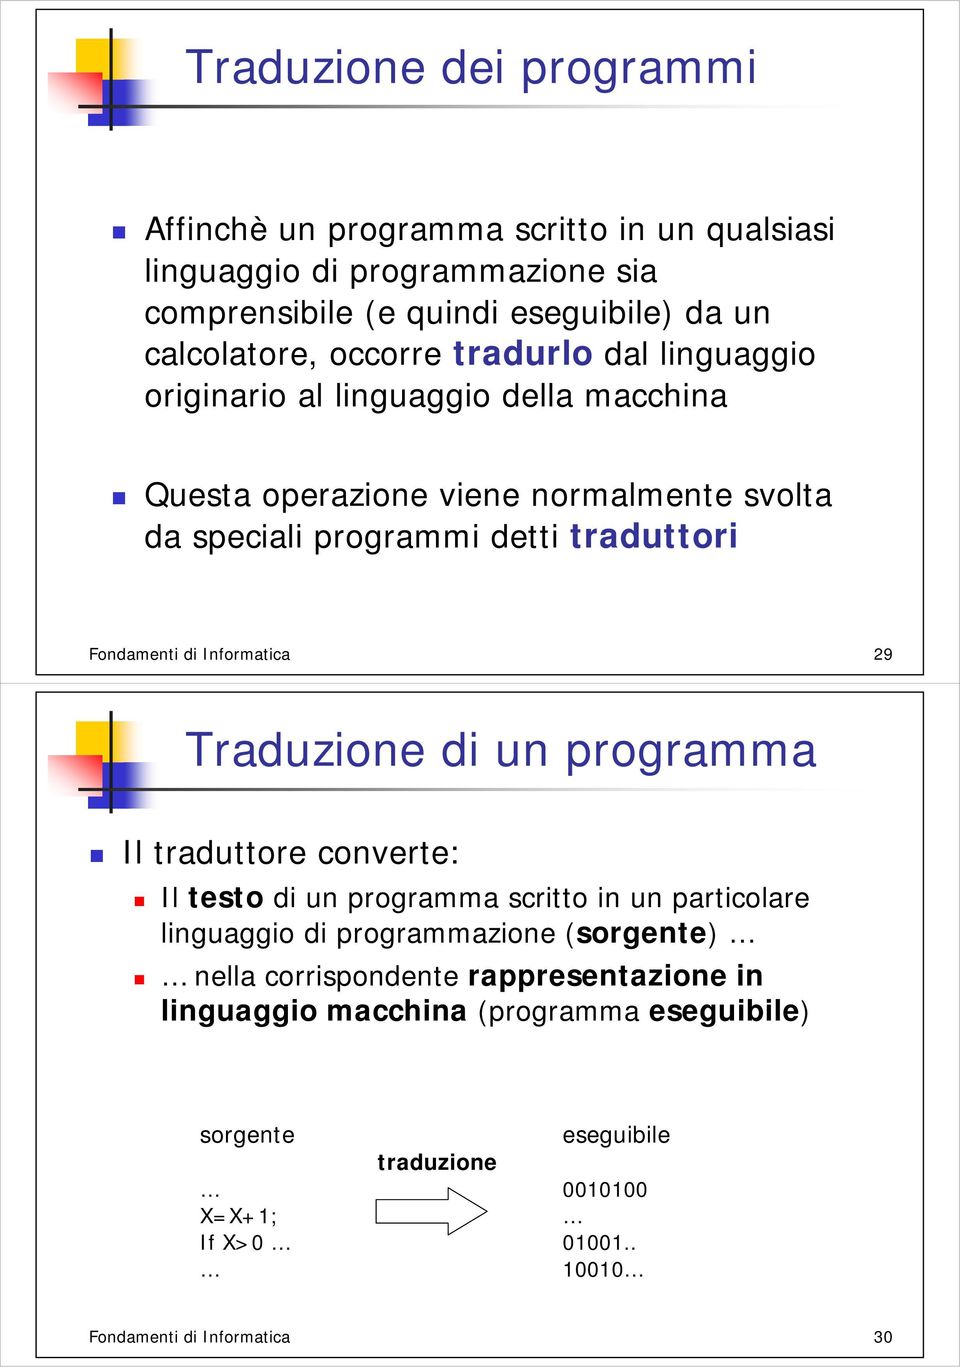 di Informatica 29 Traduzione di un programma Il traduttore converte: Il testo di un programma scritto in un particolare linguaggio di programmazione (sorgente) nella